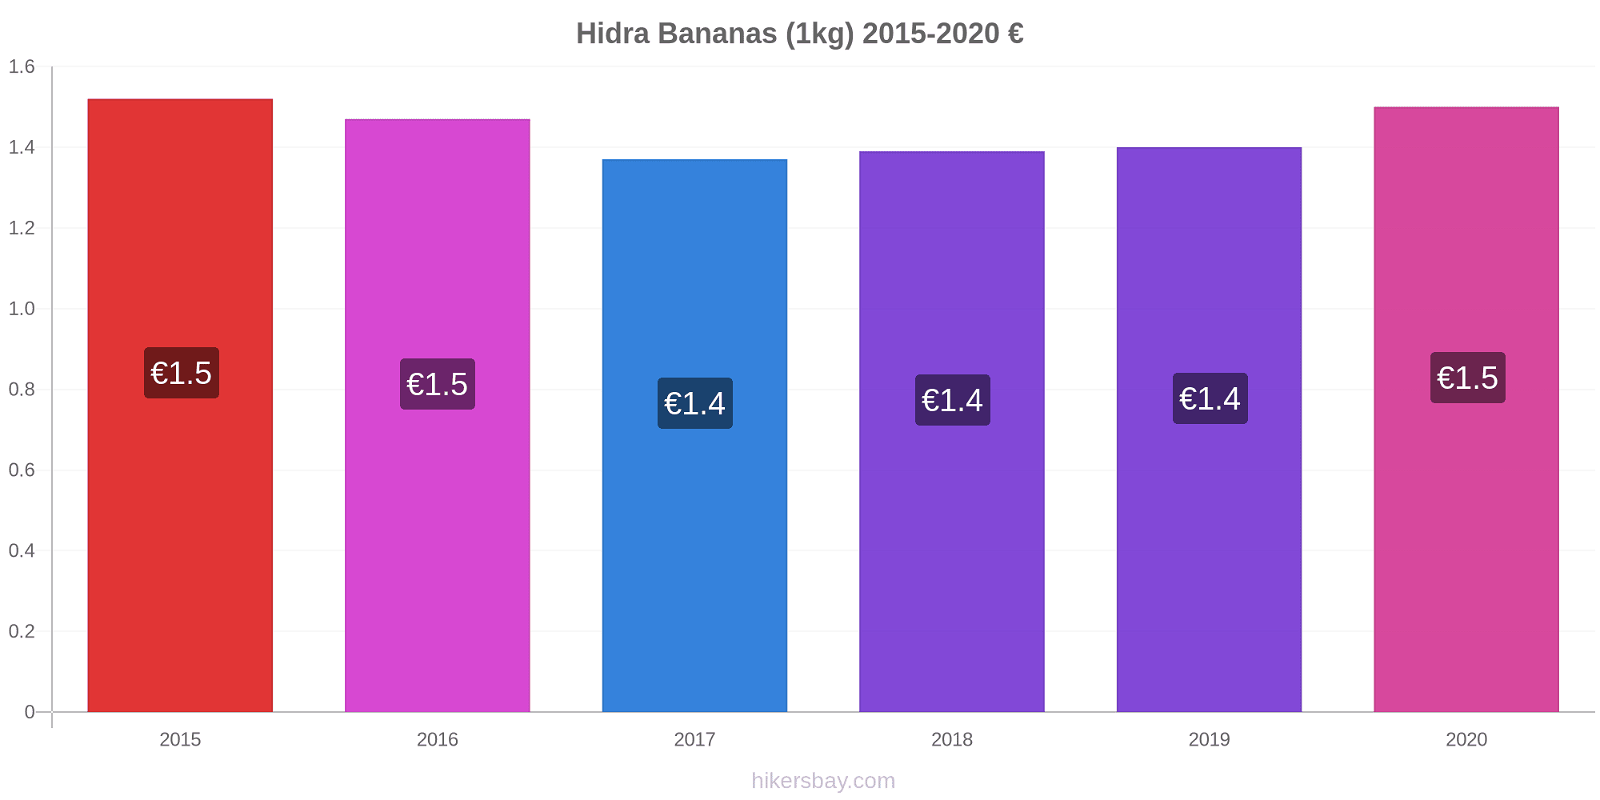 Hidra variação de preço Banana (1kg) hikersbay.com